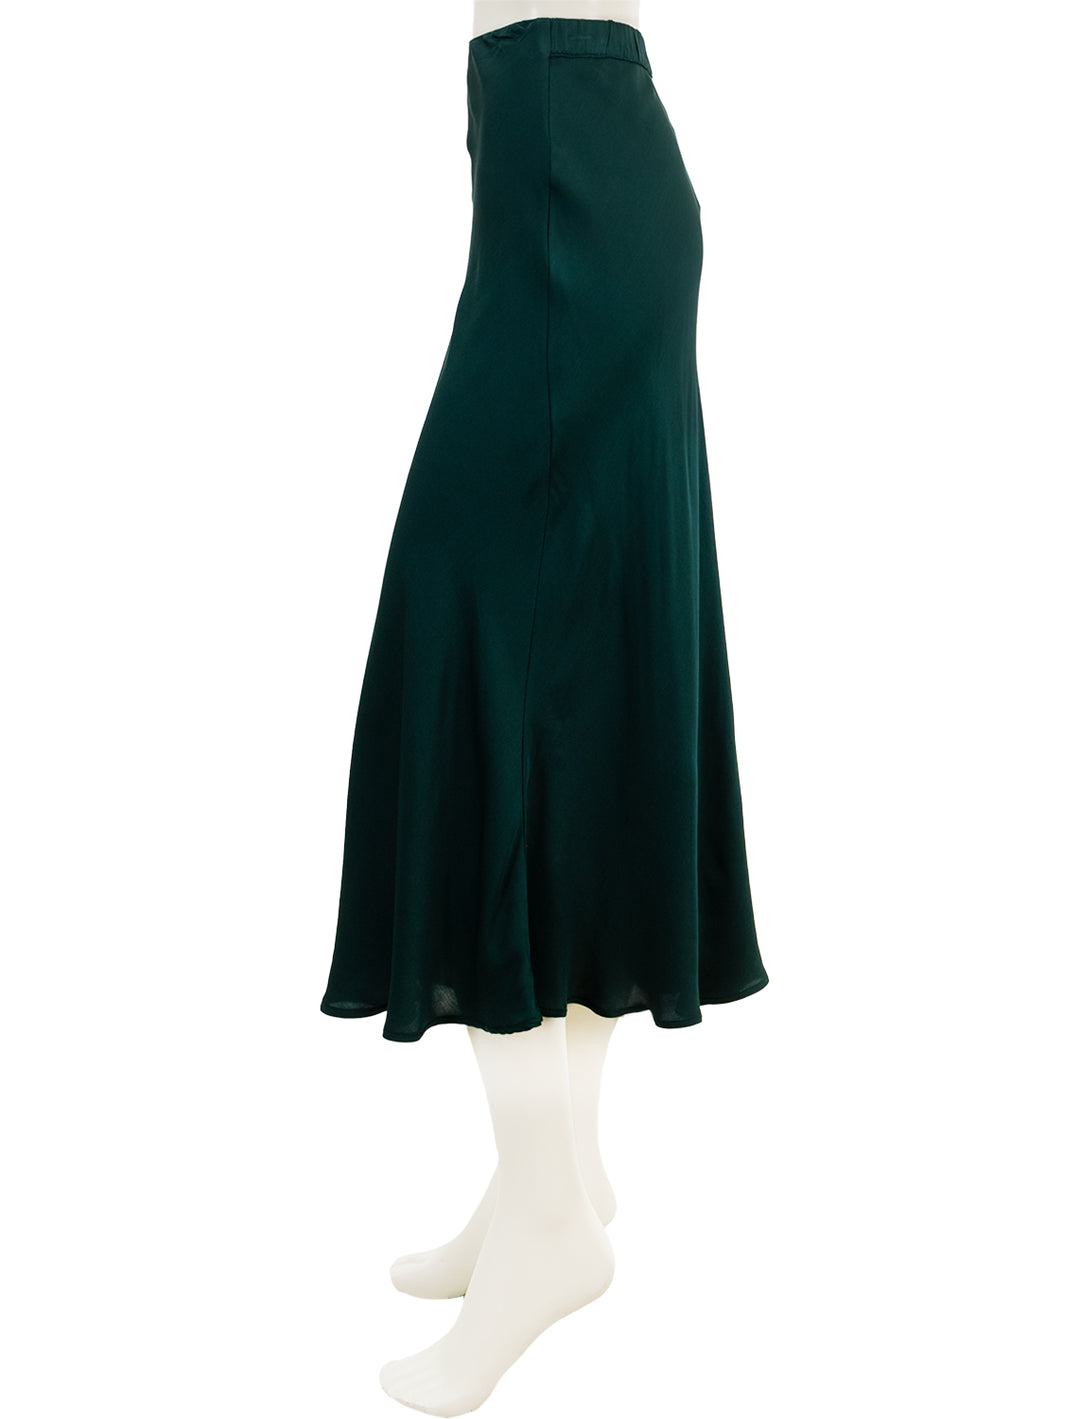 Side view of Velvet's aubree skirt in fern.